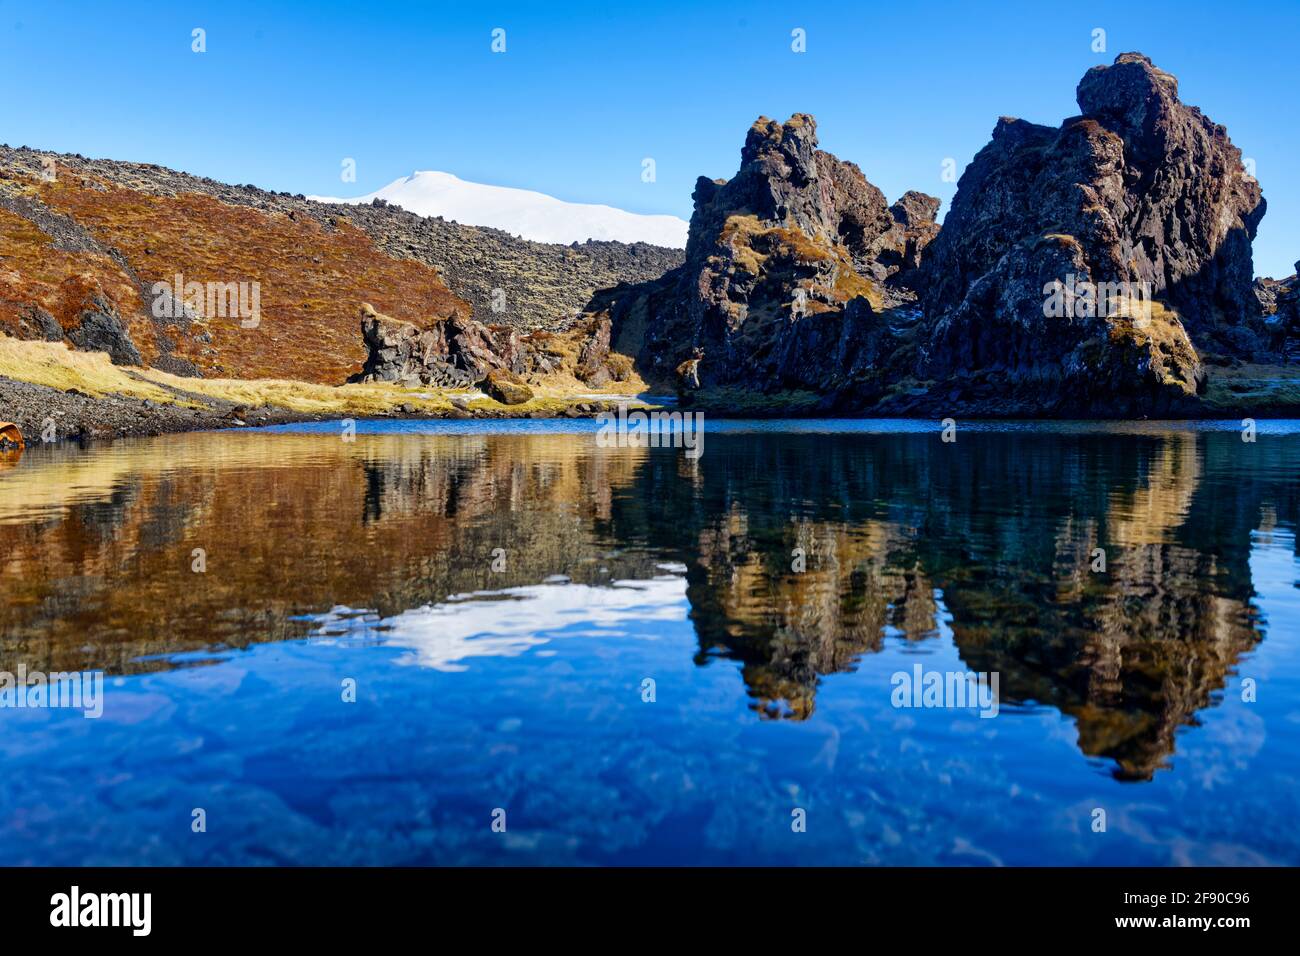 Collines et formations rocheuses reflétant dans l'eau, Islande Banque D'Images